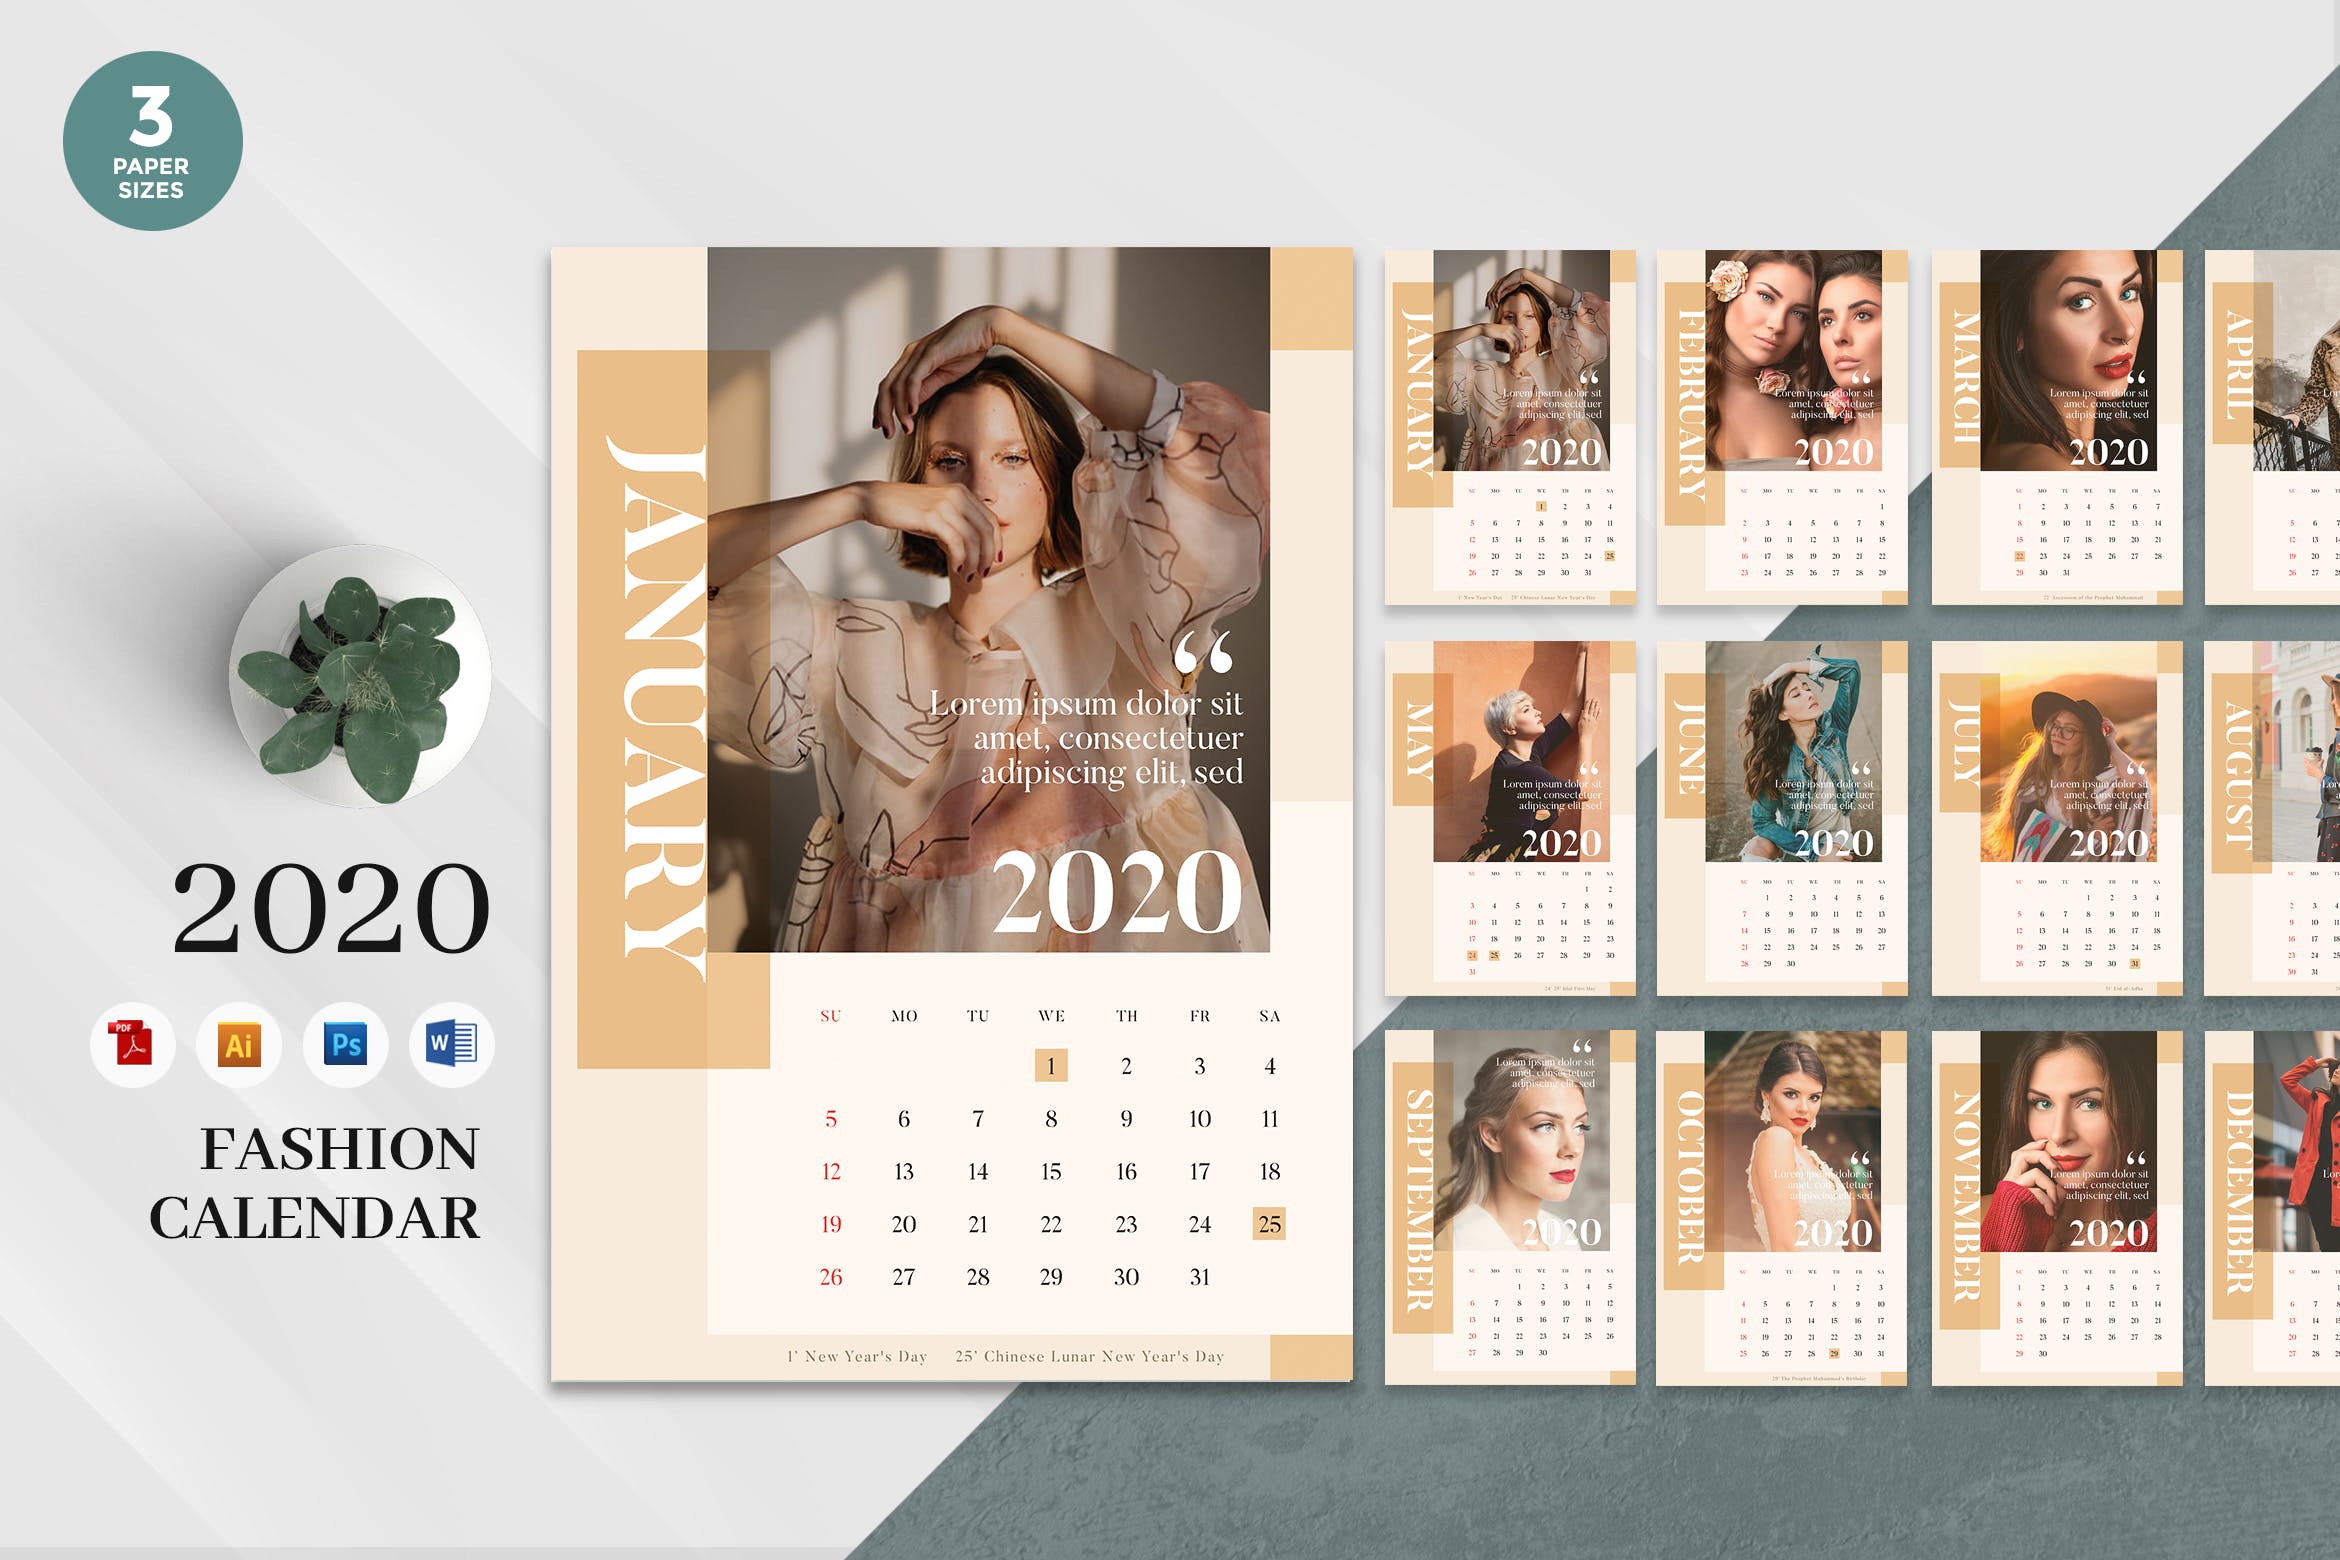 优雅时尚主题2020年日历表设计模板 Elegant Fashion 2020 Calendar – AI, DOC, PSD插图